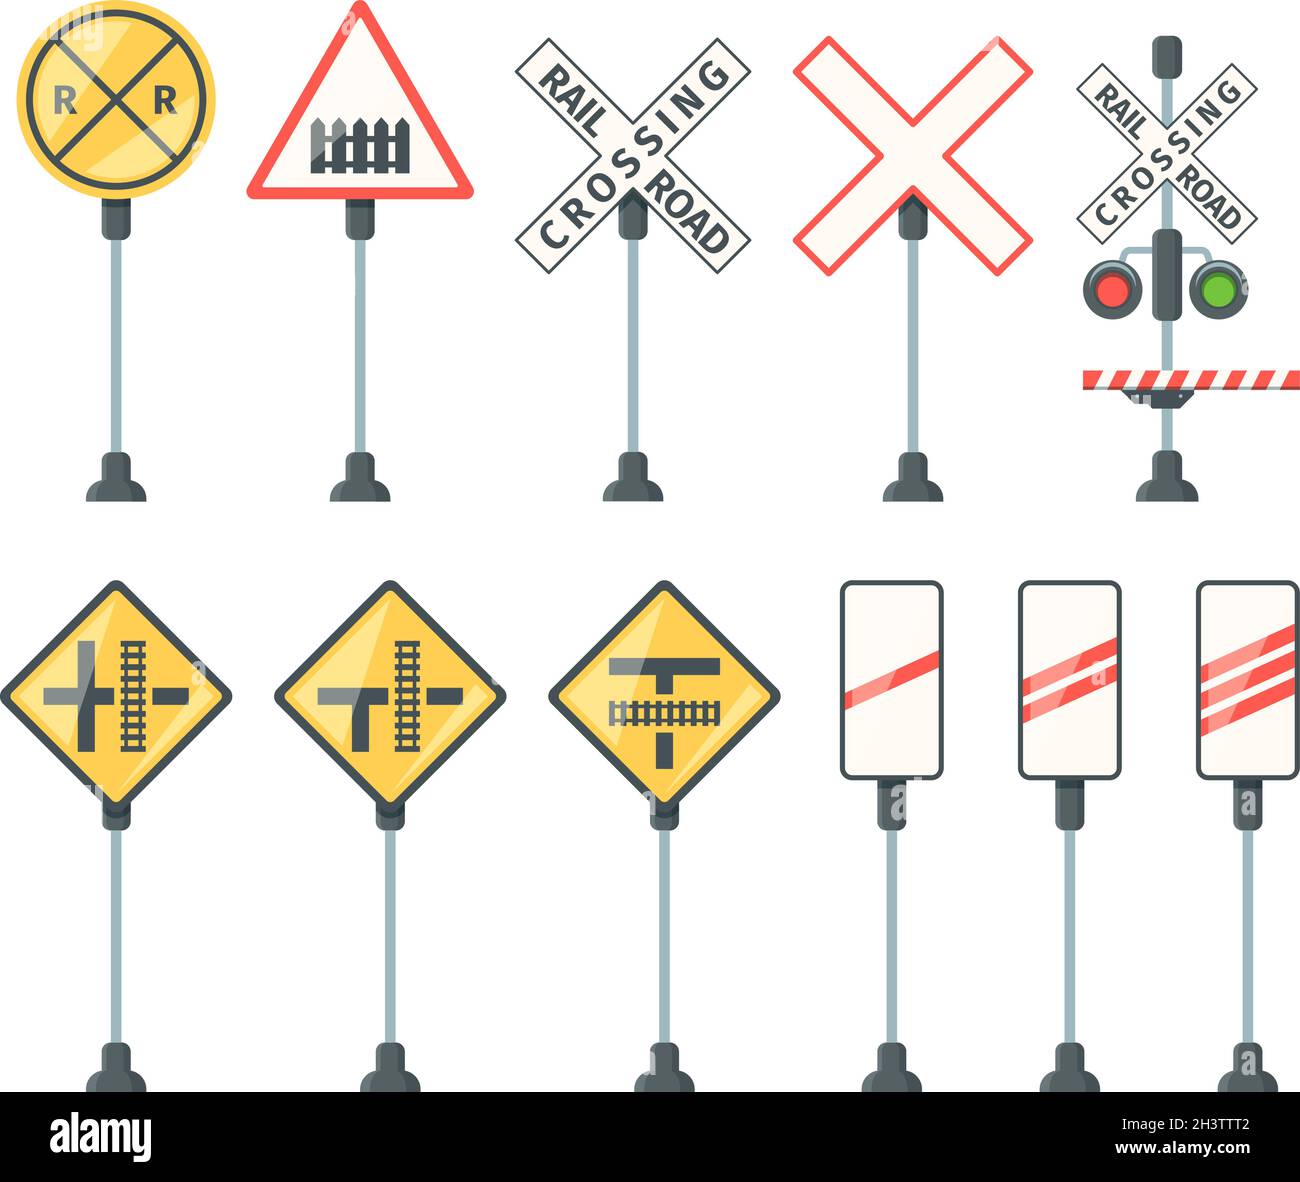 Segnaletica ferroviaria. Treno barriere semaforo simboli specifici direzione stradale frecce e banner immagini vettoriali piatte Illustrazione Vettoriale